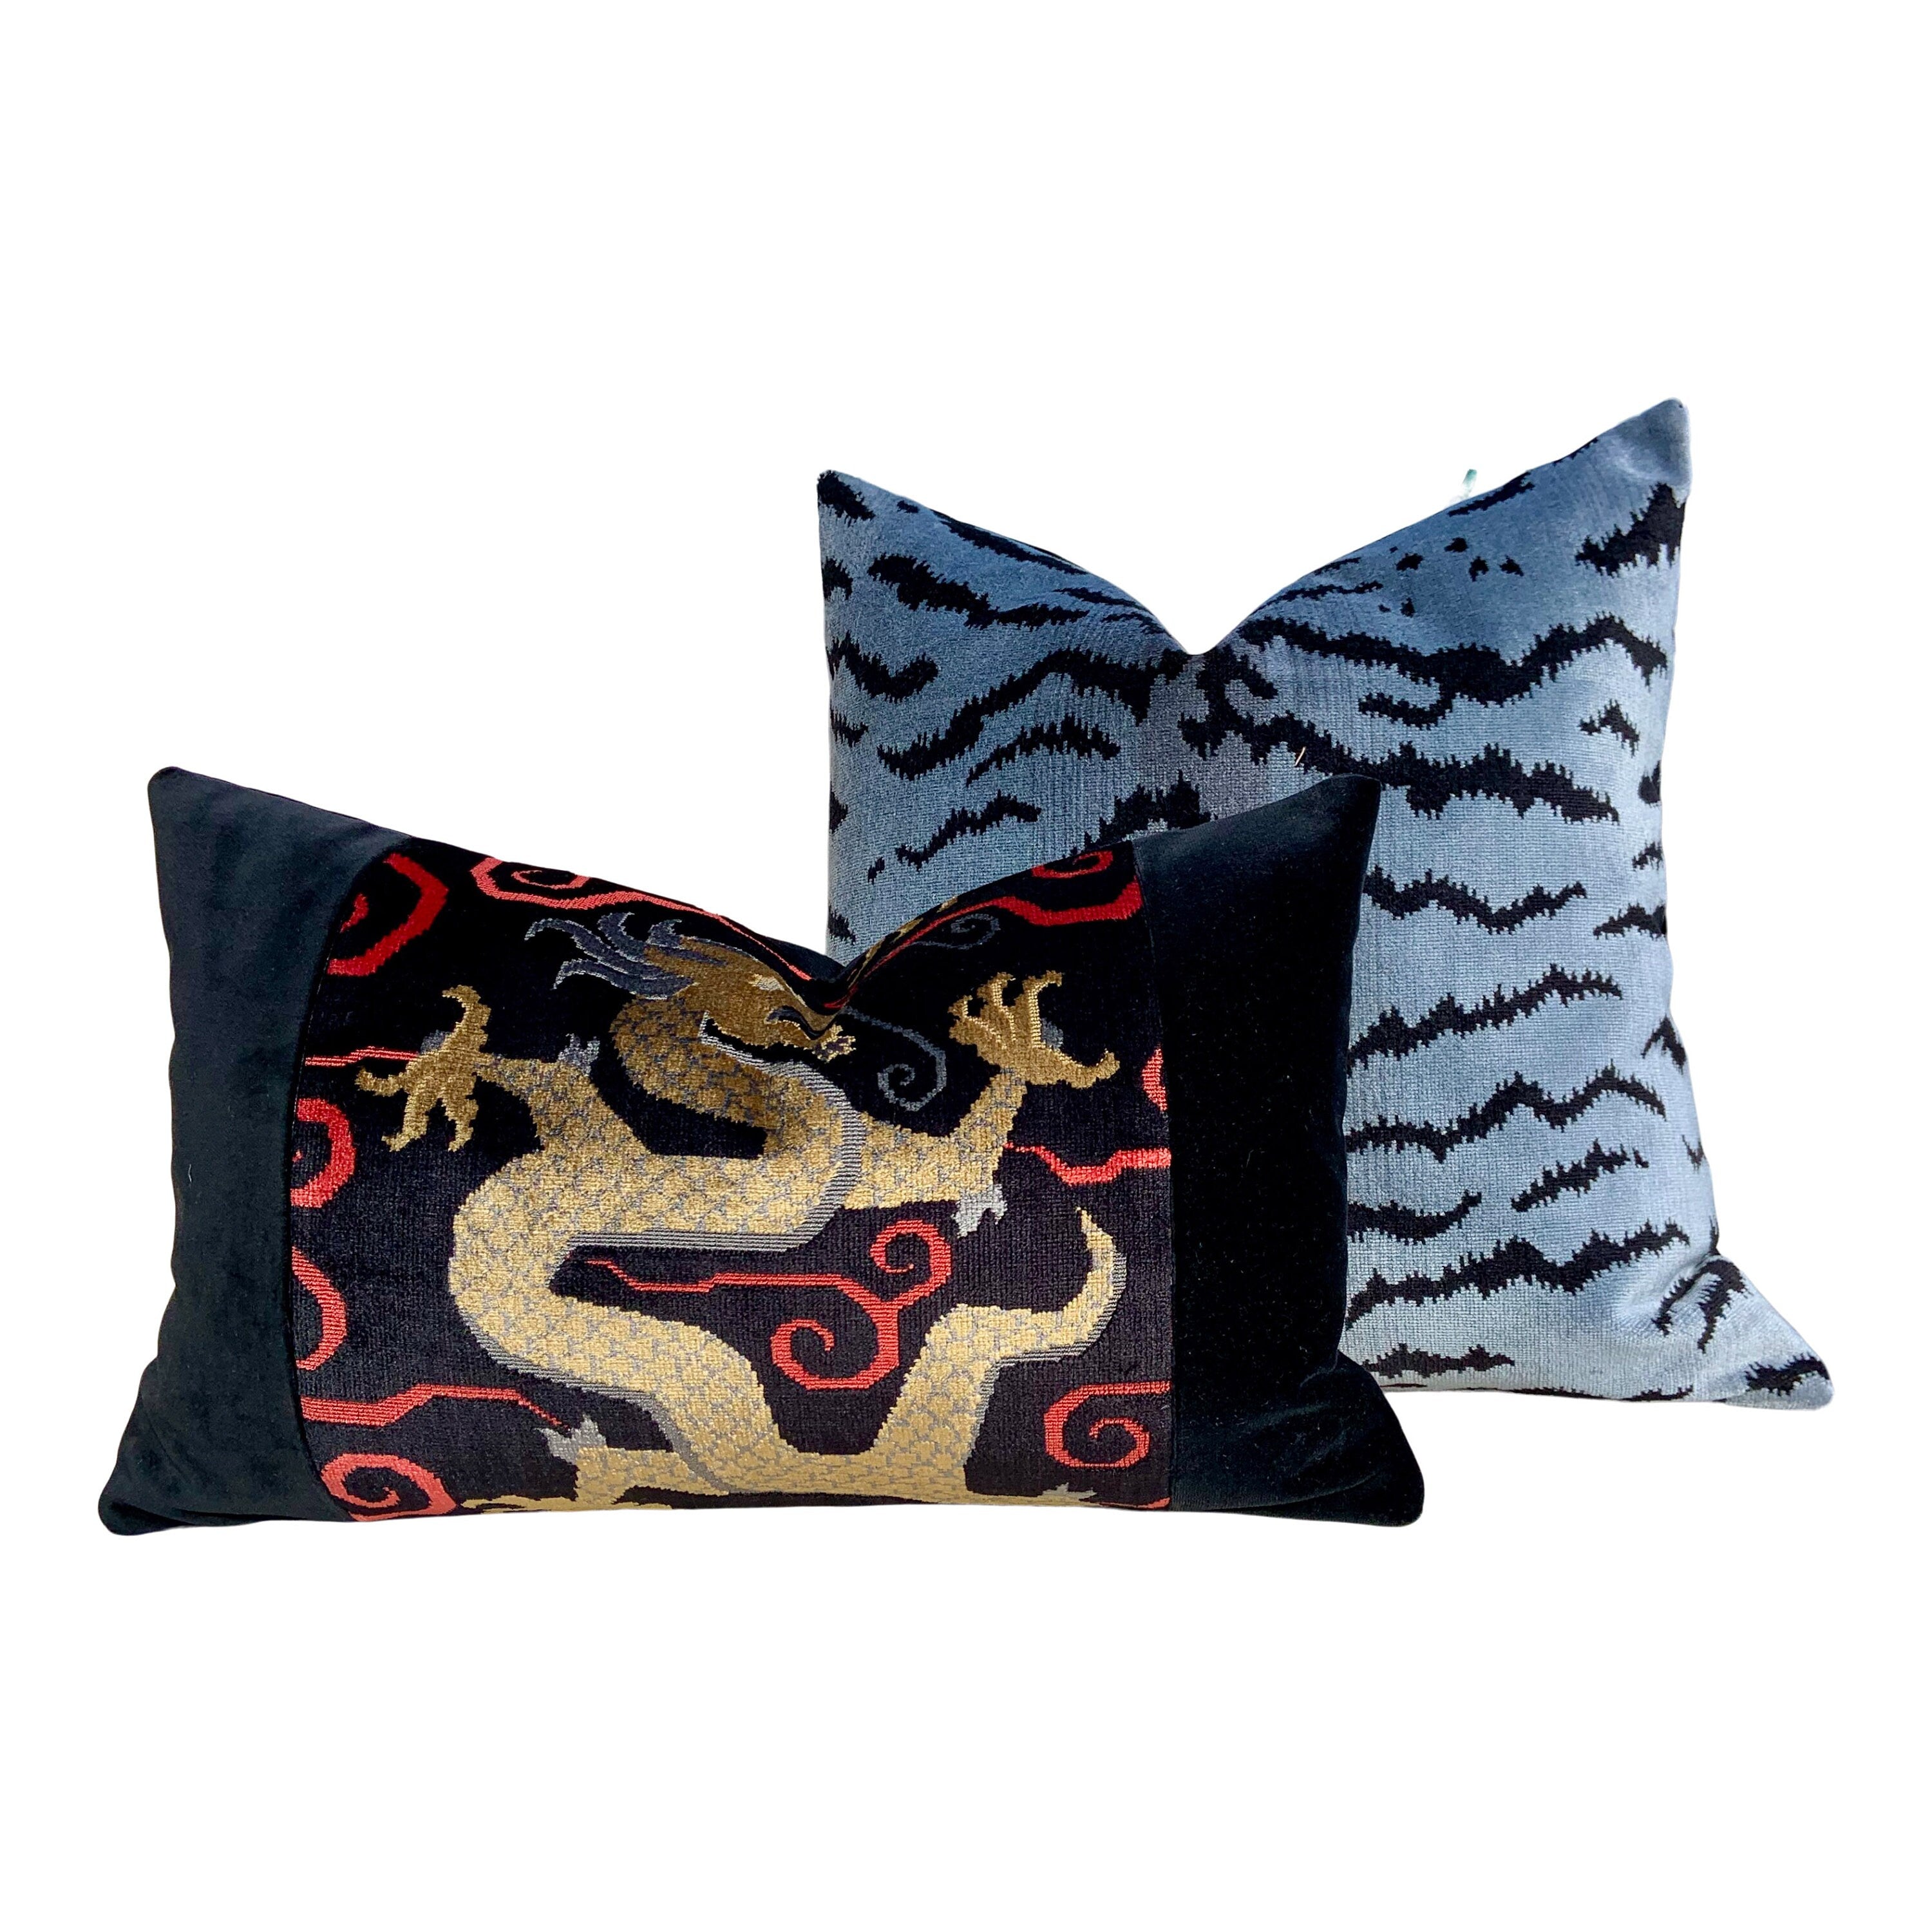 Schumacher Bixi Velvet Lumbar Pillow in Onyx. Lumbar Dragon Pillow, Black Dragon Pillow, Chinoiserie Velvet pillow